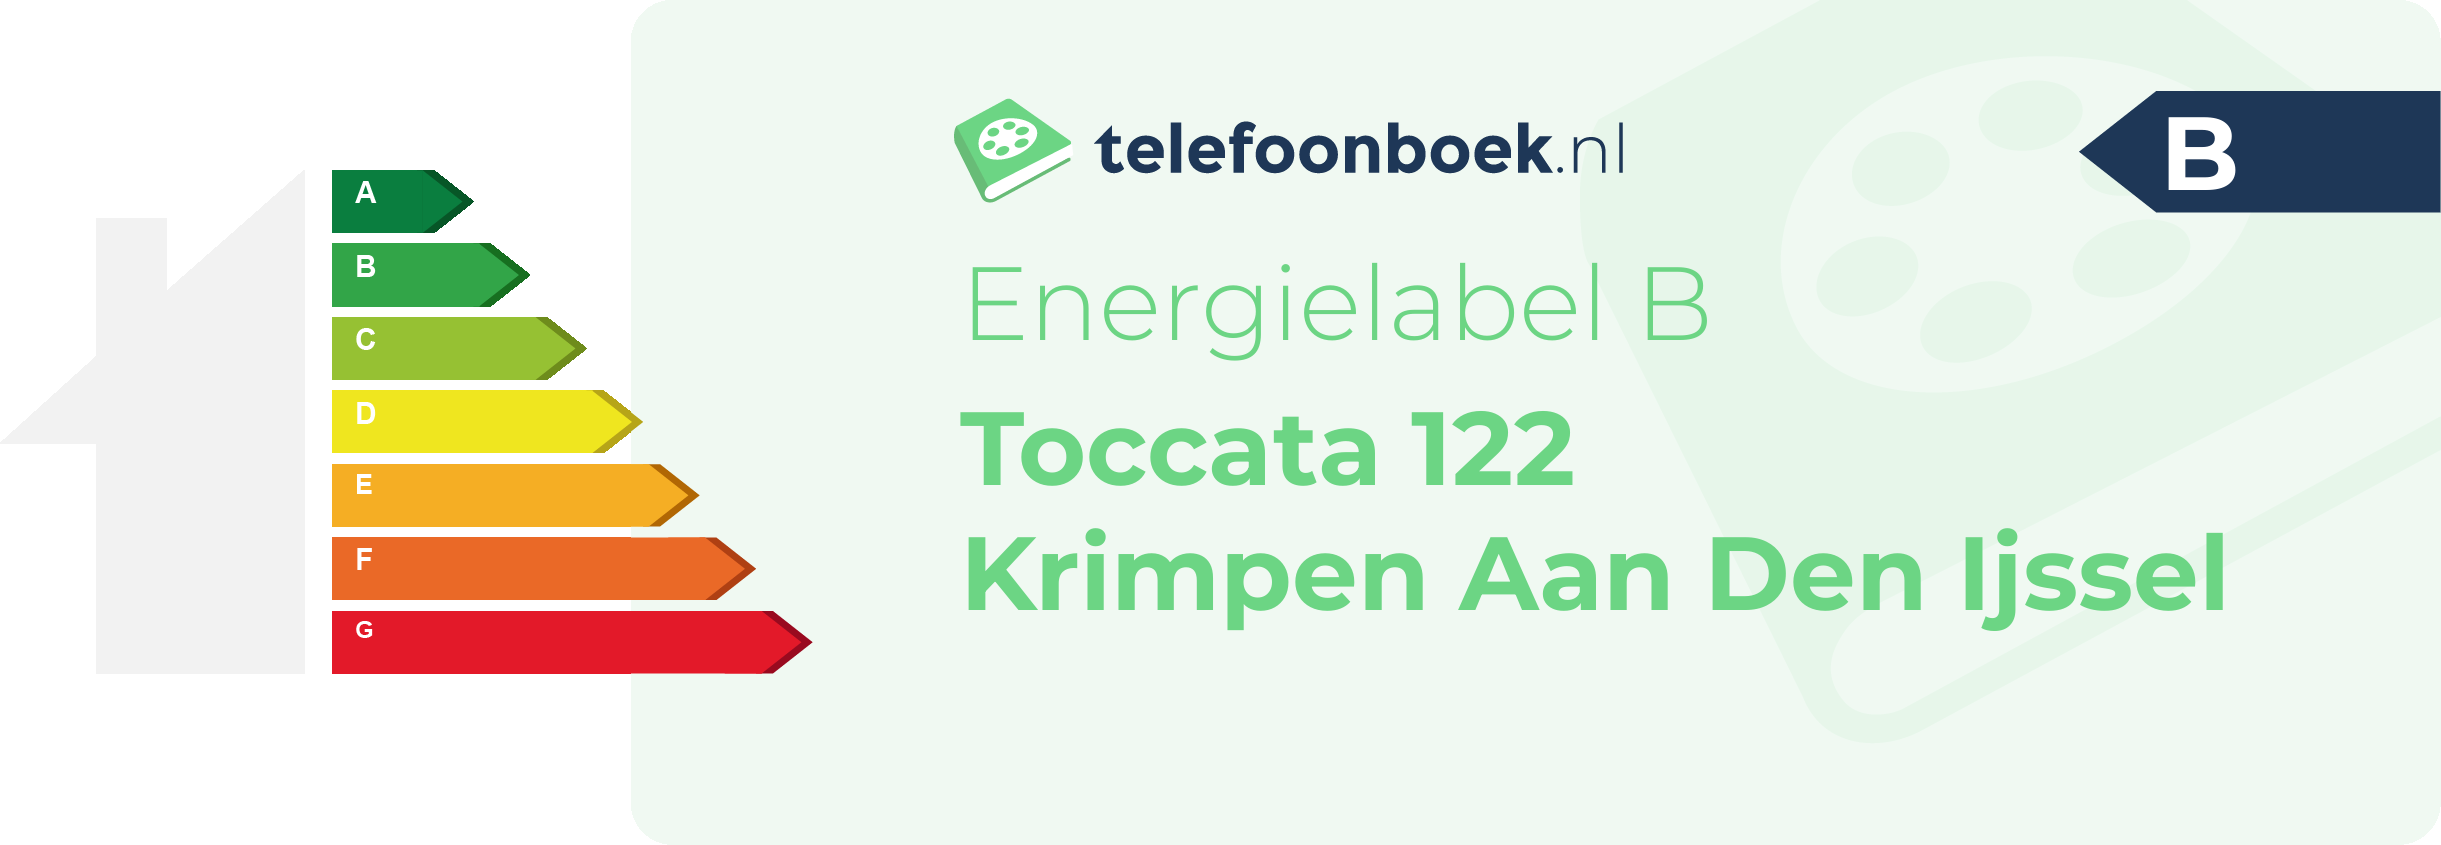 Energielabel Toccata 122 Krimpen Aan Den Ijssel